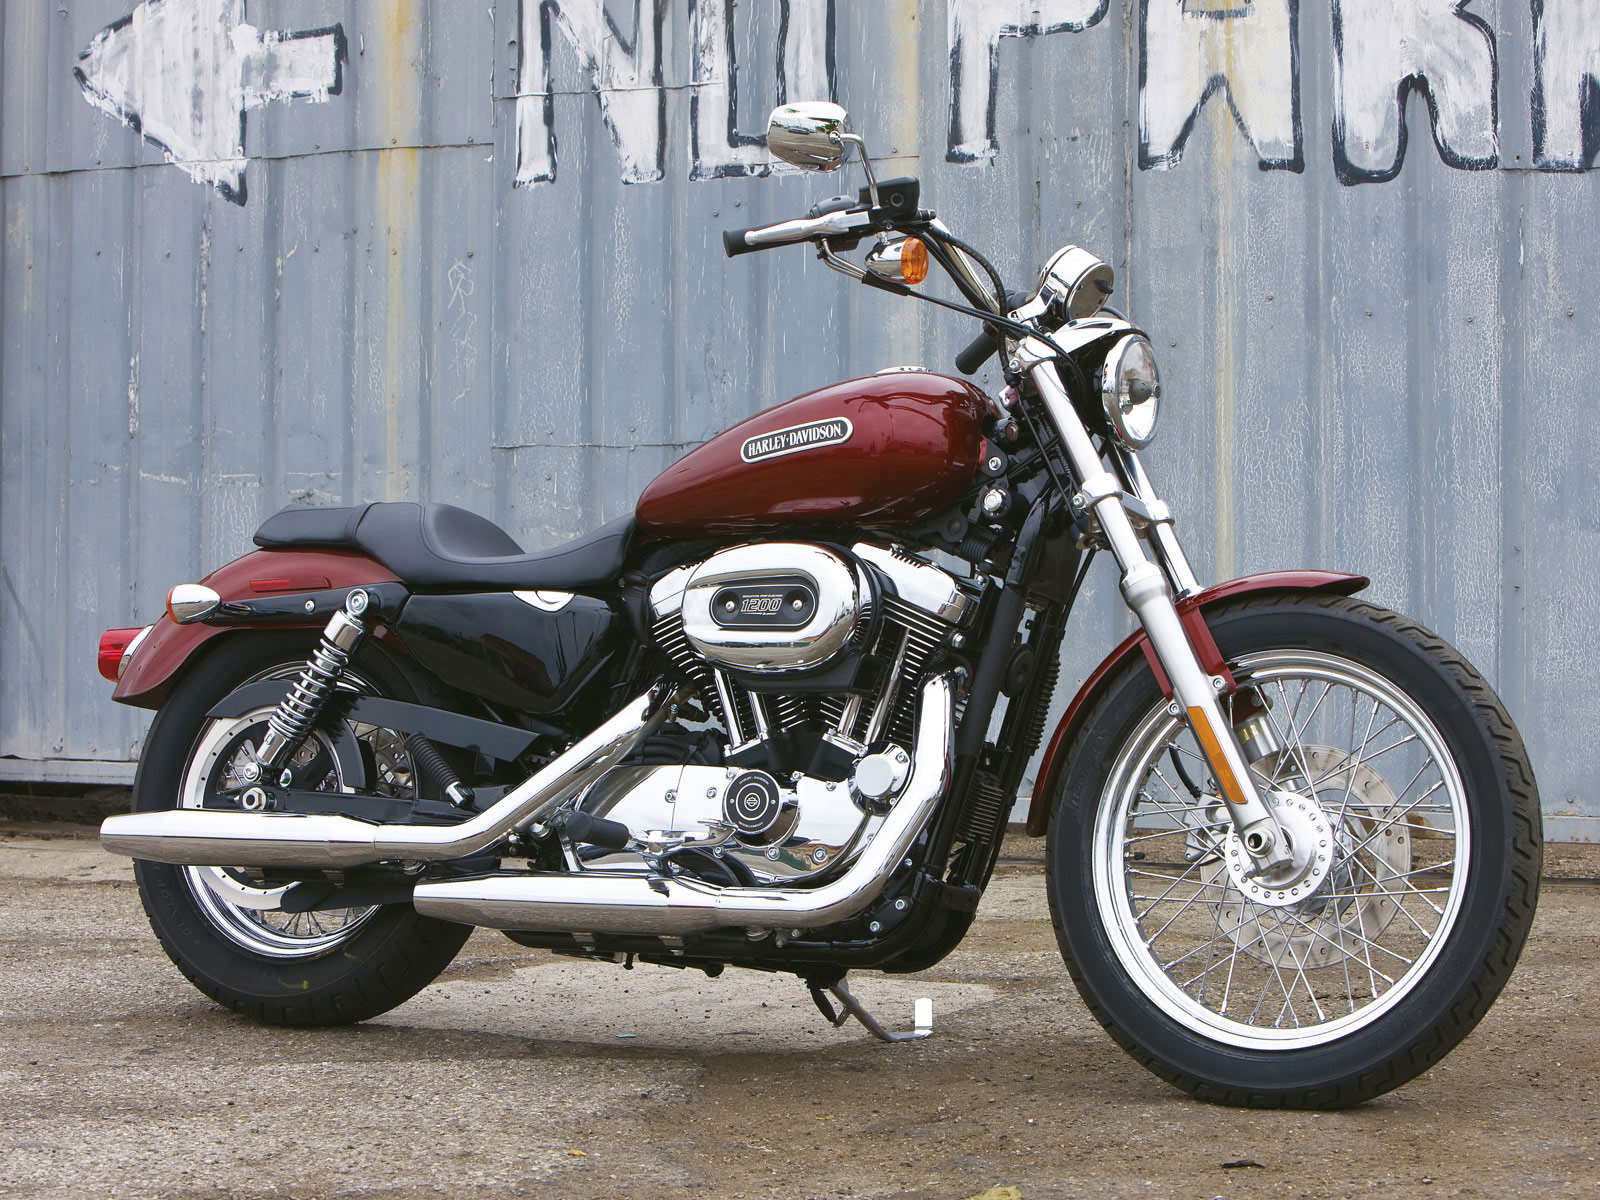 Harley-Davidson XL 1200 Low XL 1200L 1200 Low photo - 2